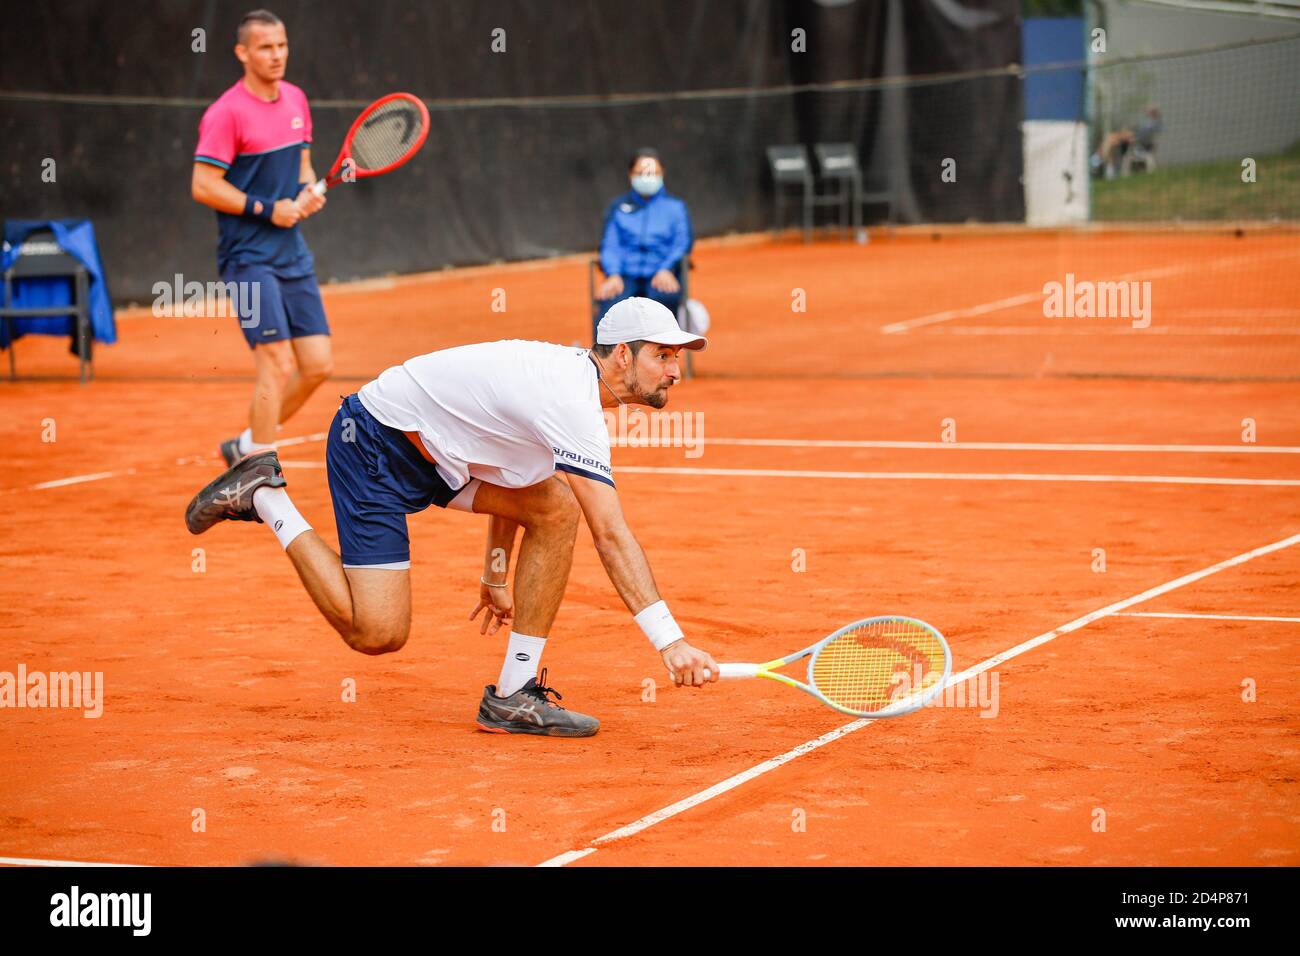 Omislav Brkic - Marcelo Arevalo durante ATP Challenger 125 - internazionali Emilia Romagna, Tennis internazionali, parma, Italia, 09 Oct 2020 Credit: LM Foto Stock